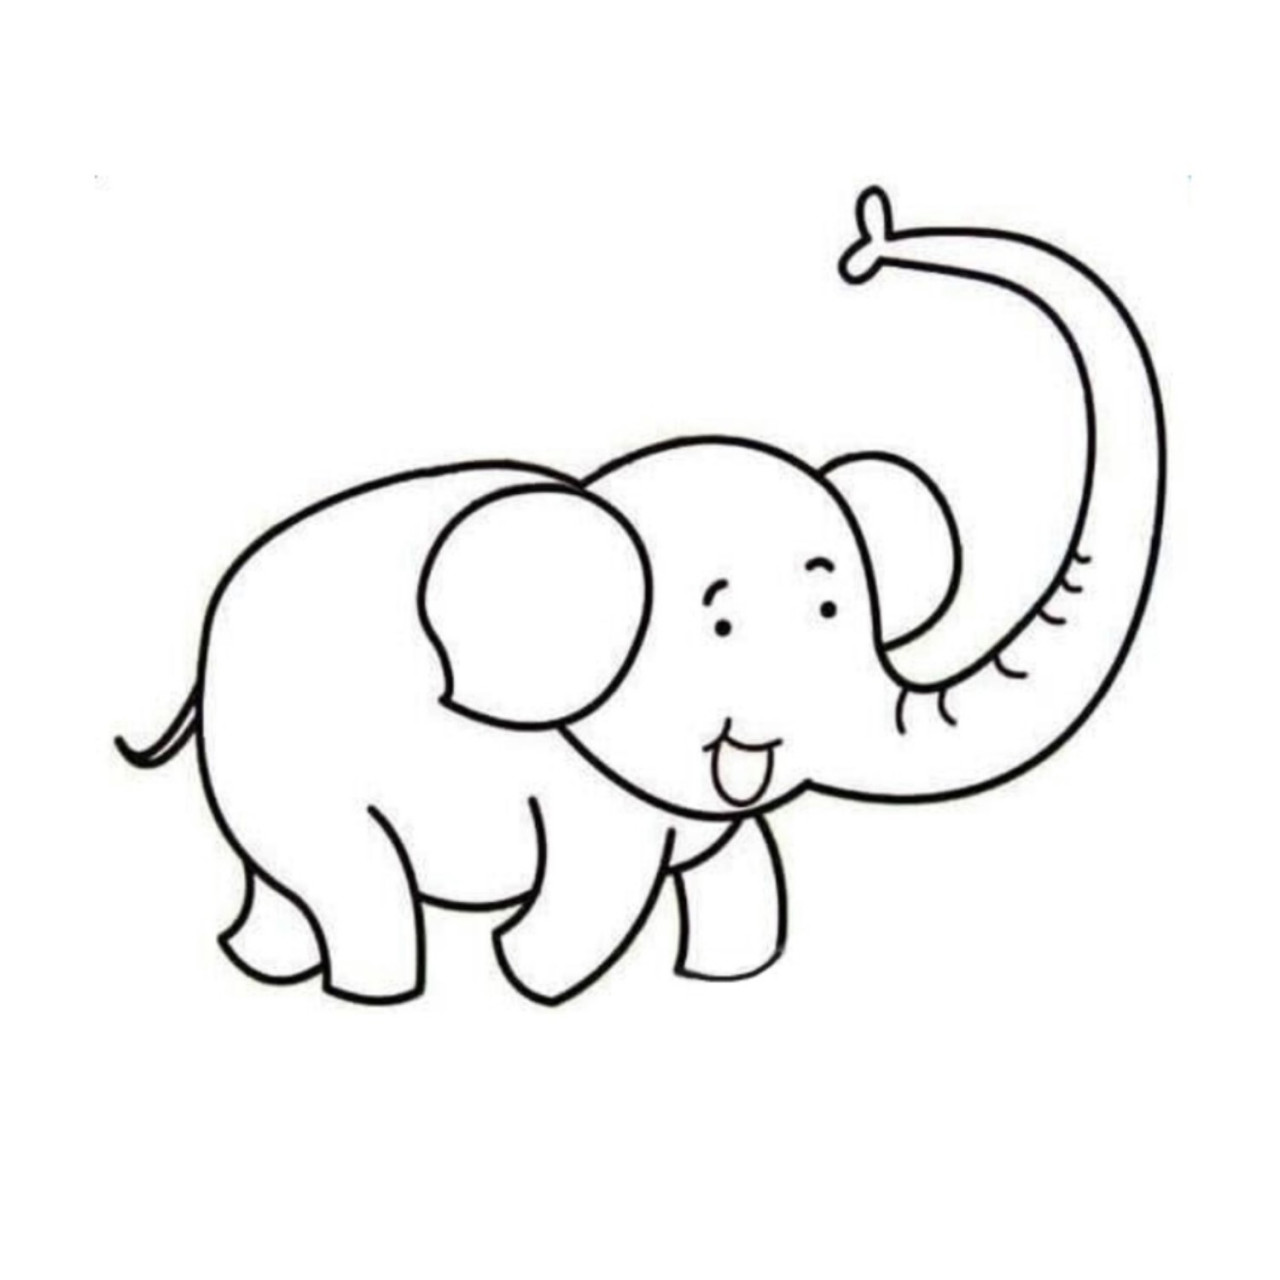 大象迁徙简笔画图片